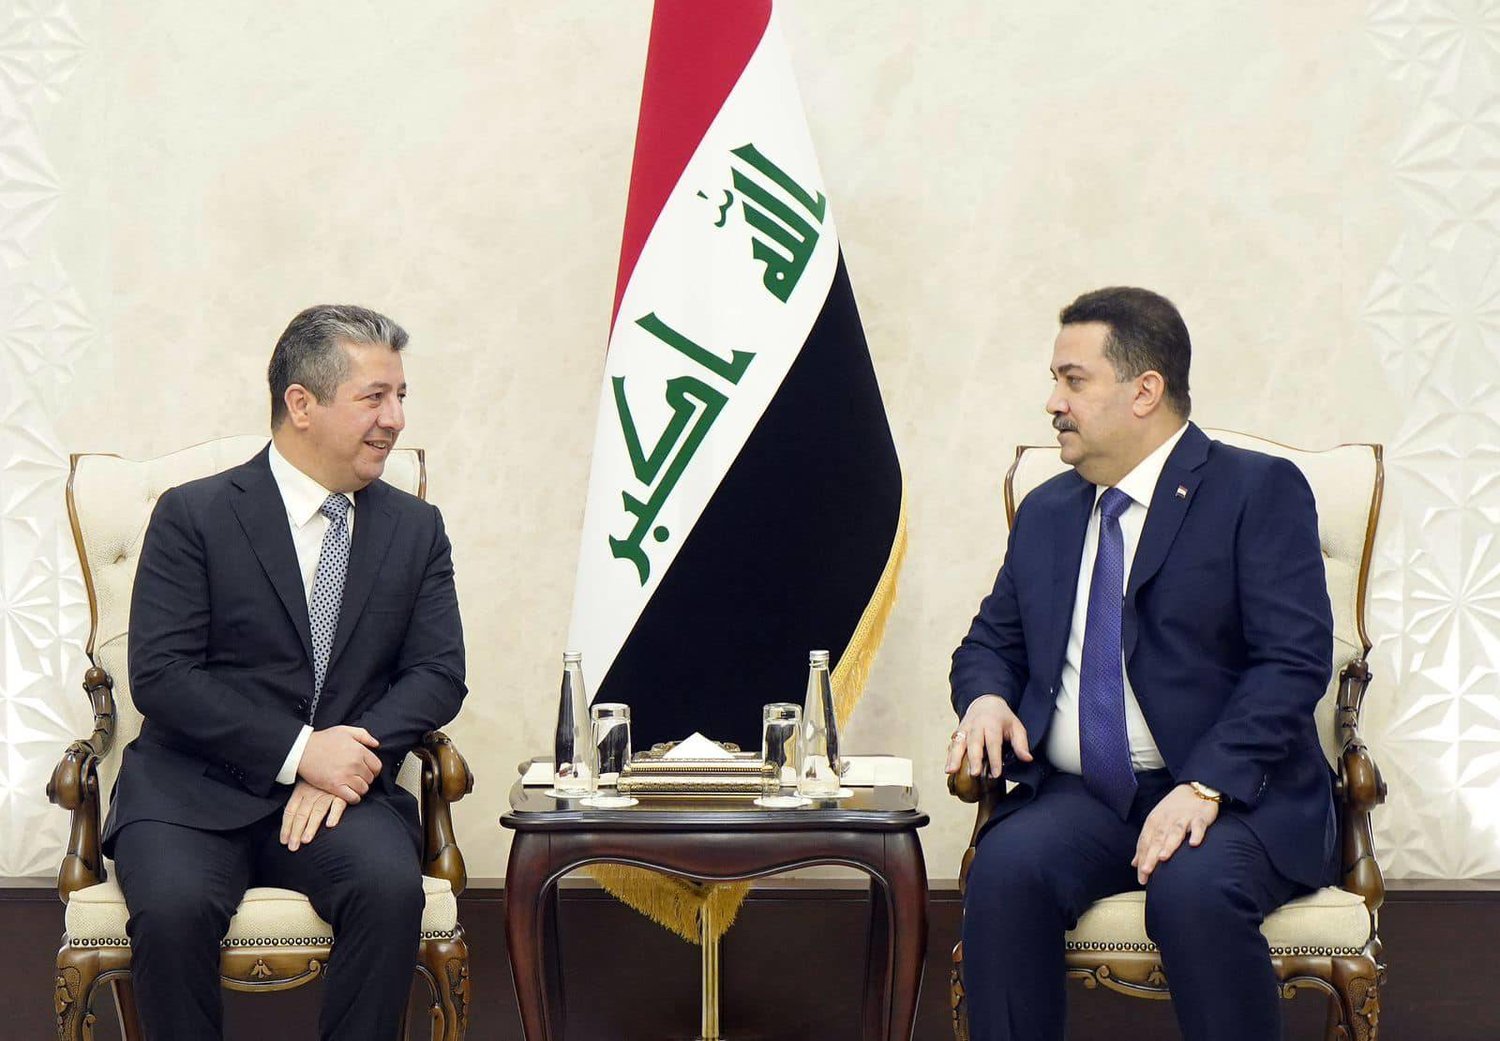 رئيس الوزراء العراقي محمد شياع السوداني ورئيس حكومة إقليم كردستان العراق مسرور بارزاني خلال لقاء ببغداد (أرشيفية - المكتب الإعلامي لرئيس الوزراء العراقي)